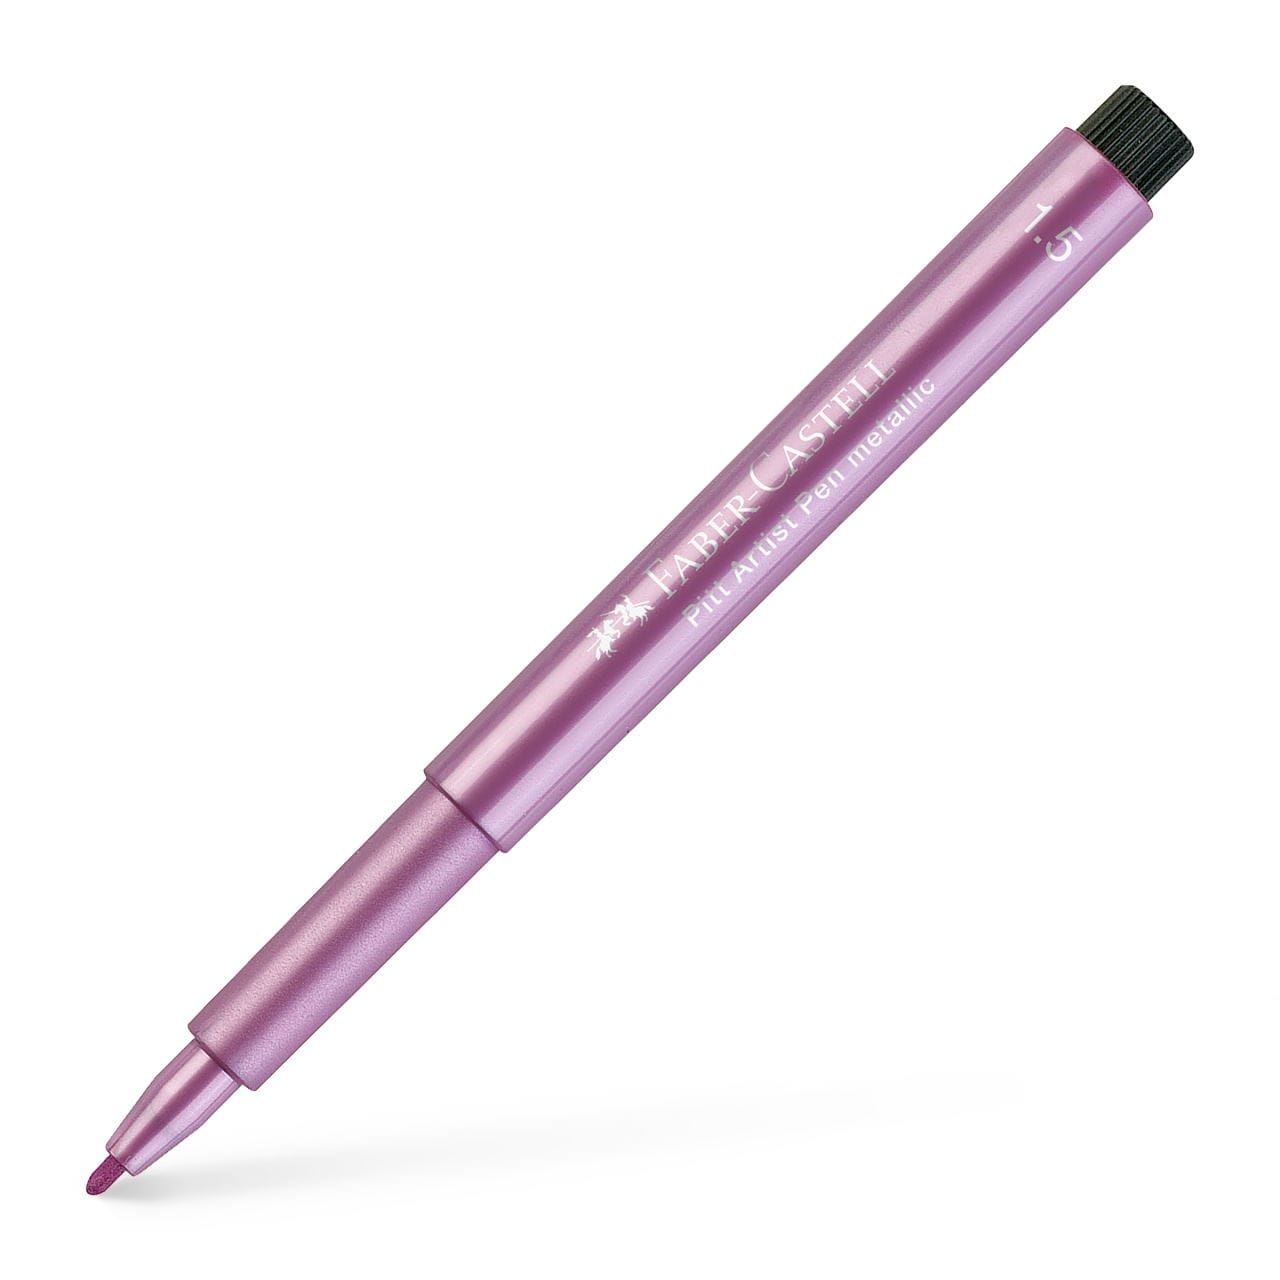 Faber-Castell - Pitt Artist Pen Metallic 1.5 India ink pen, ruby metallic